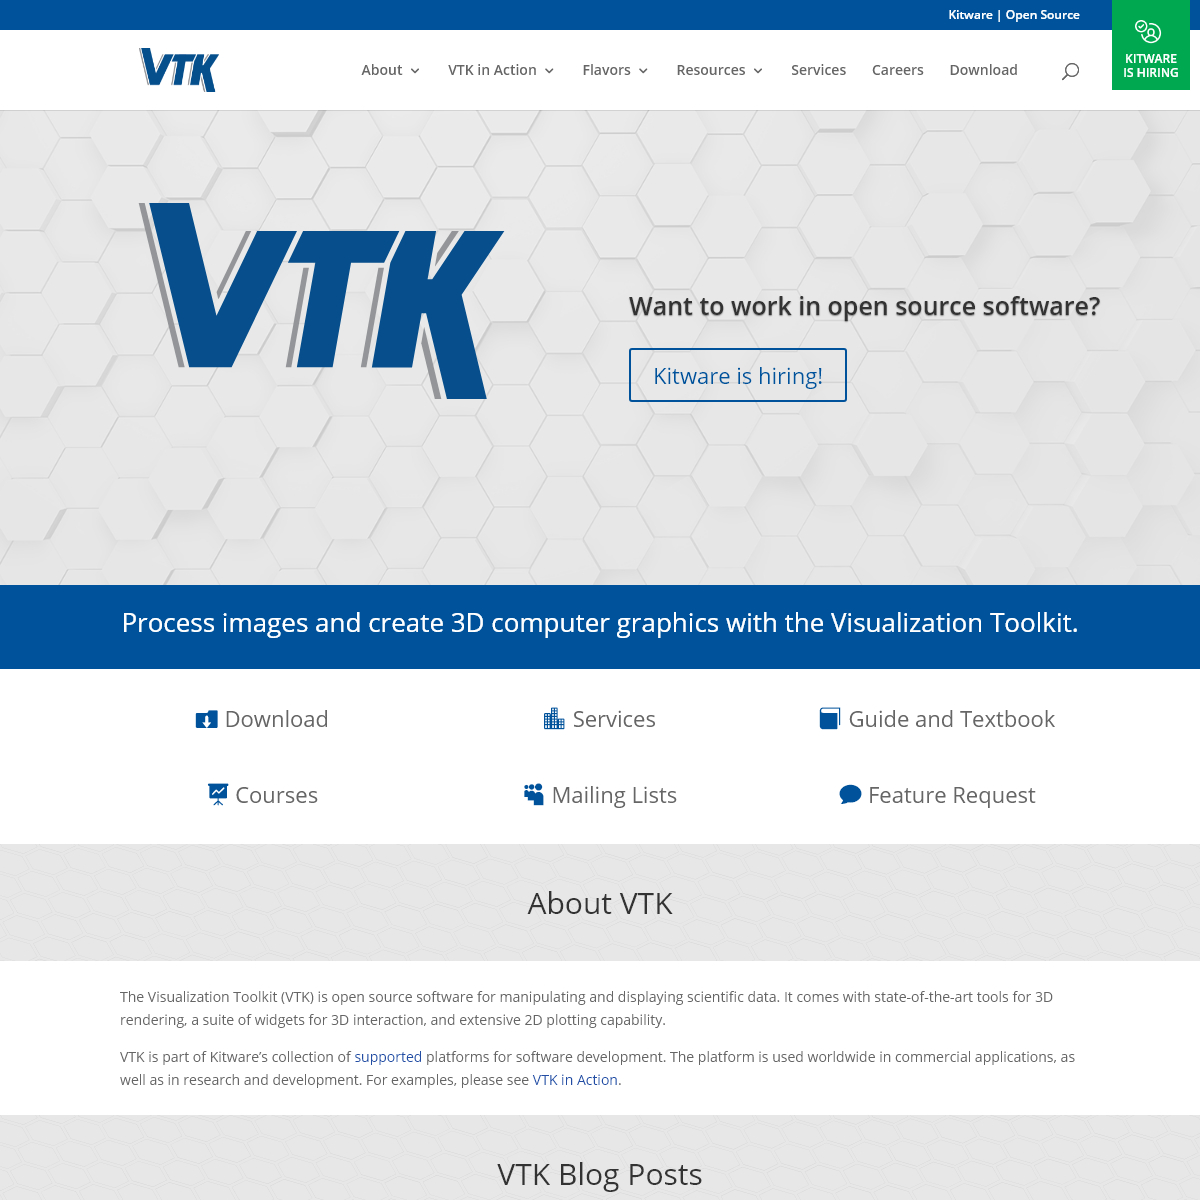 A complete backup of vtk.org